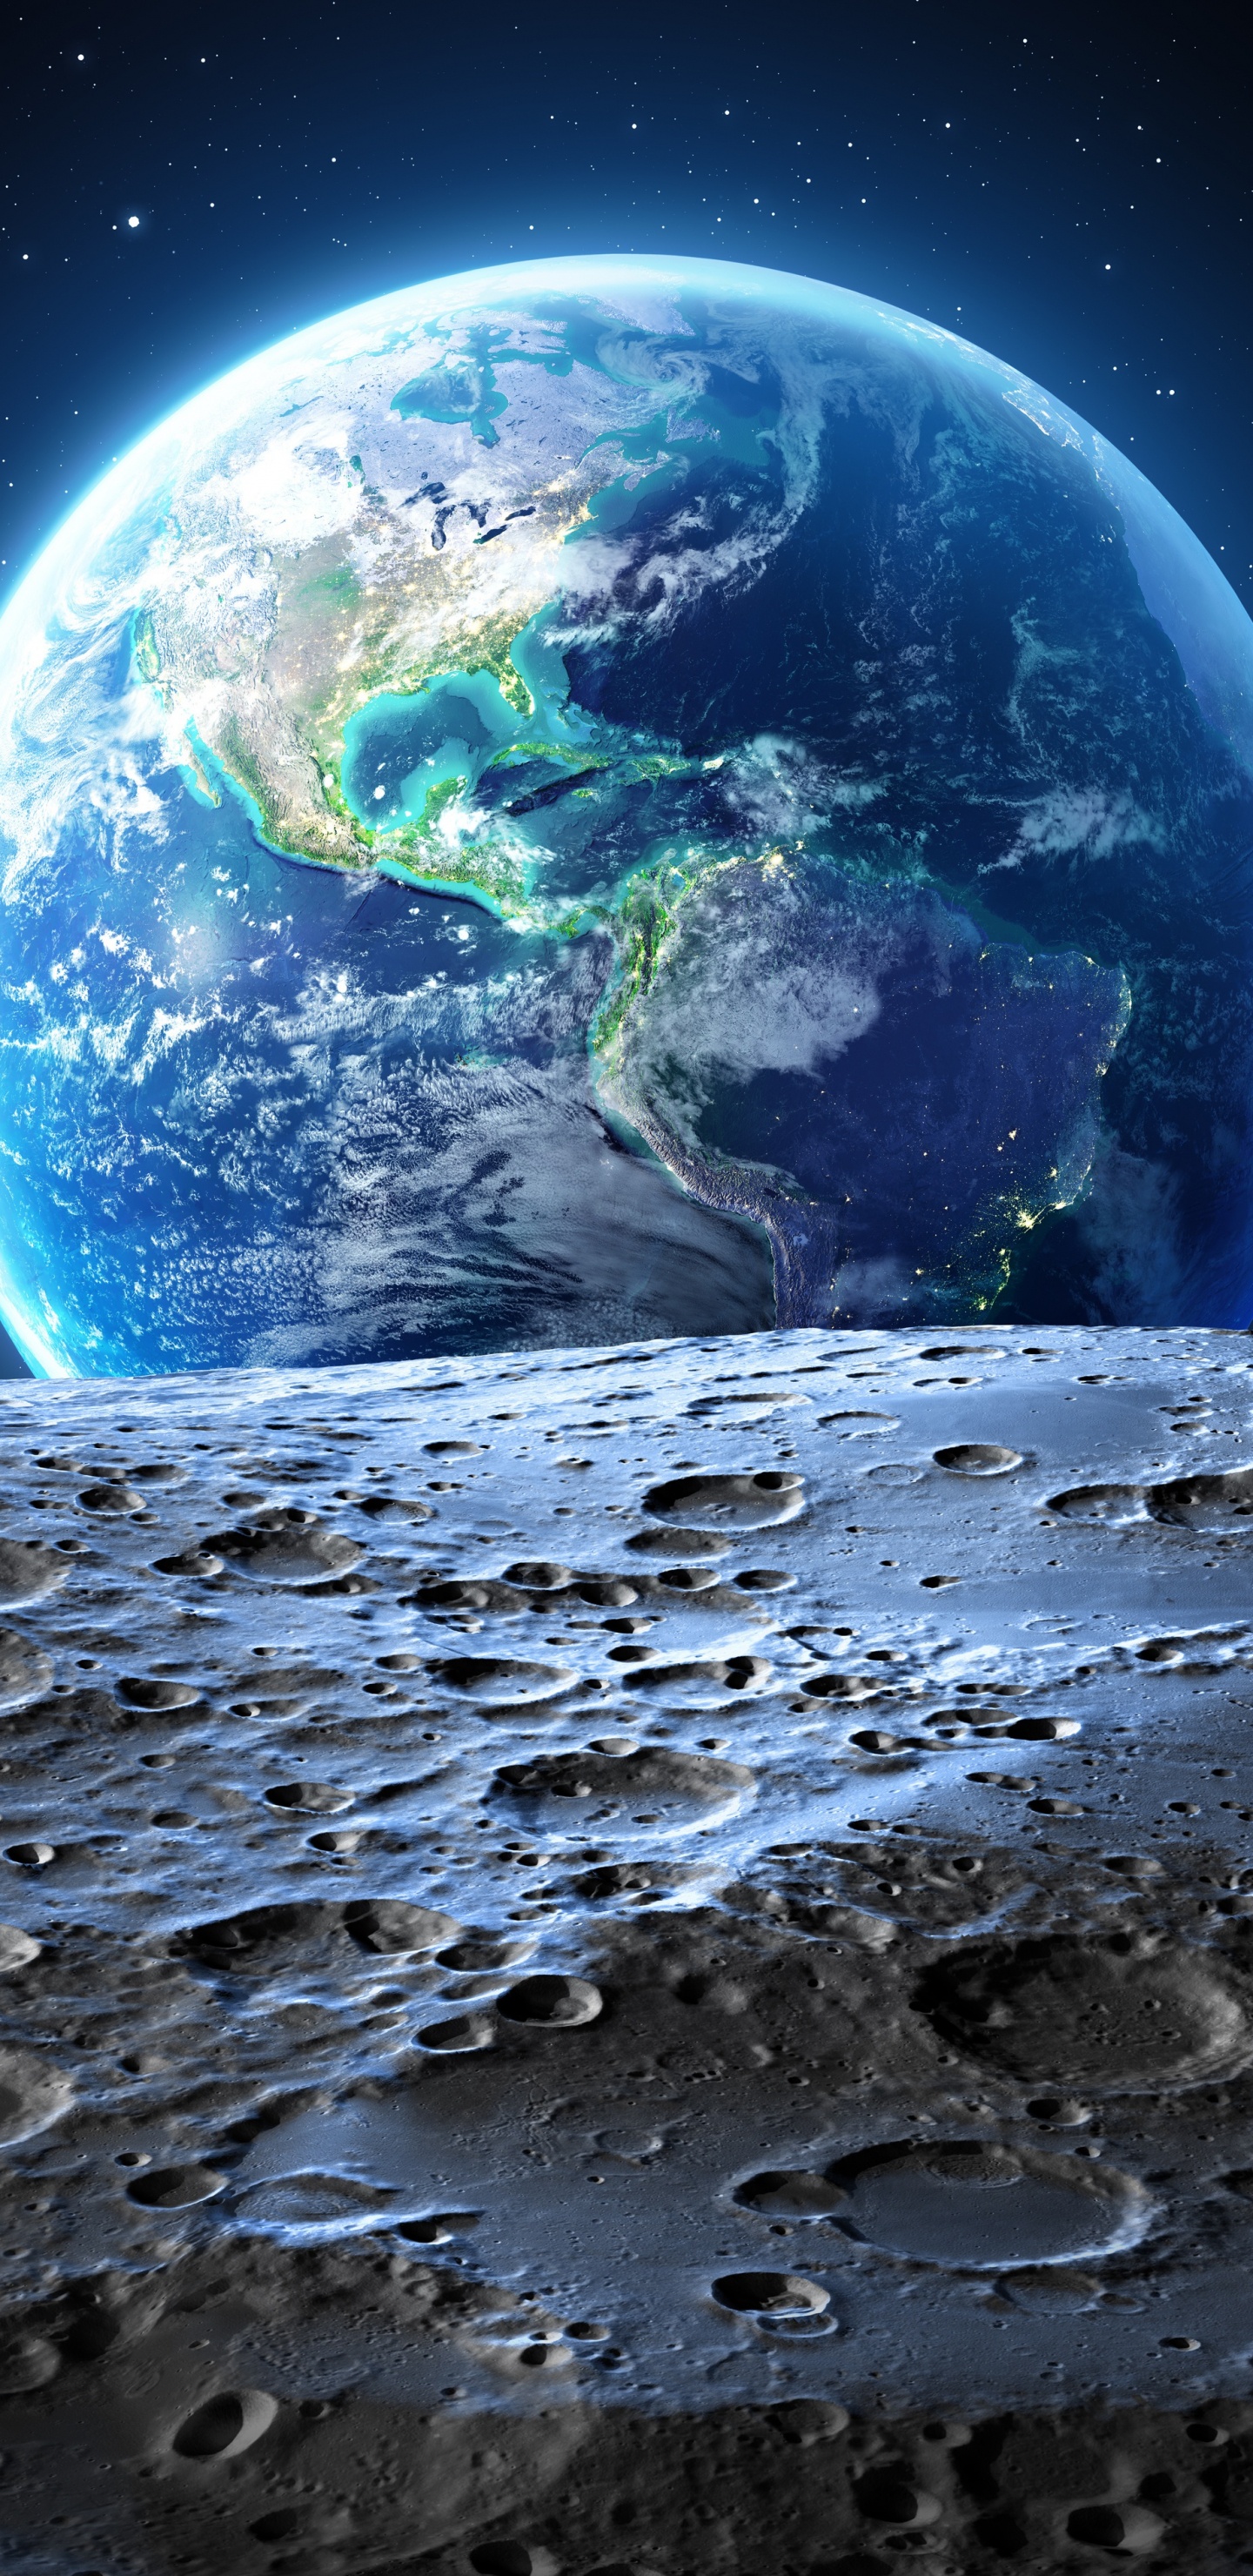 月亮, 美国, 这个星球, 外层空间, 天文学对象 壁纸 1440x2960 允许